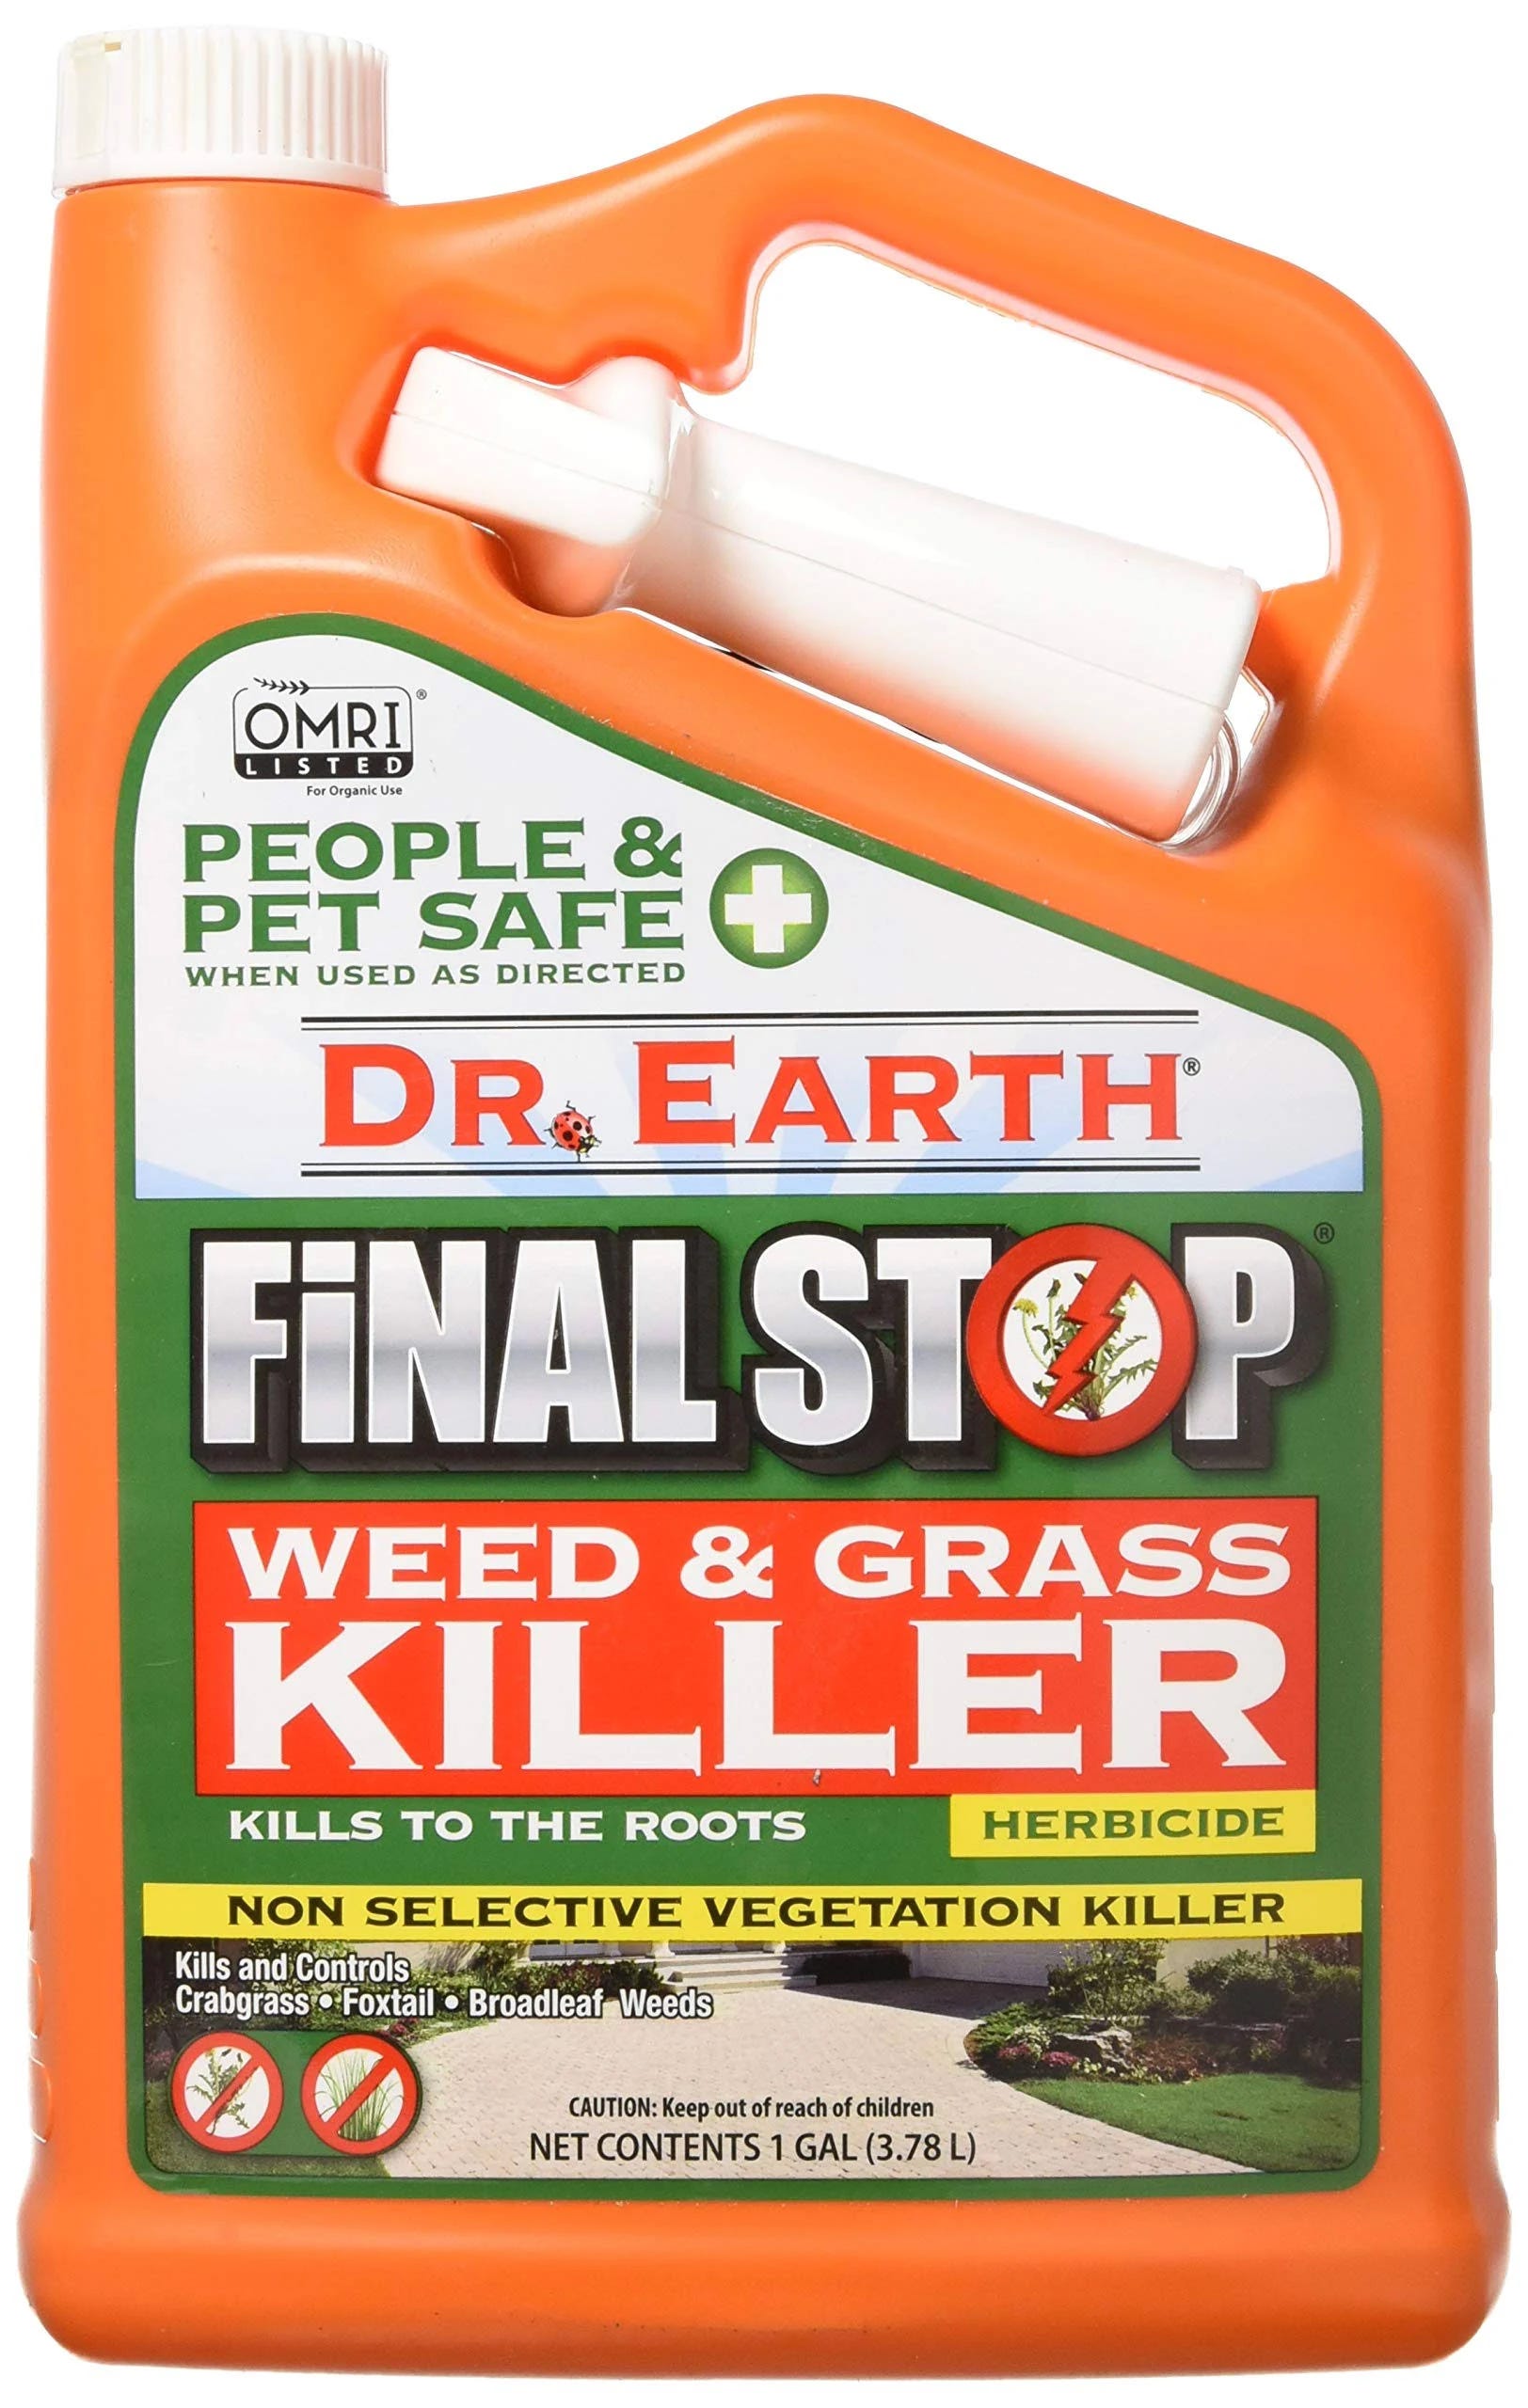 Dr. Earth Pet Safe Weed & Grass Killer | Image